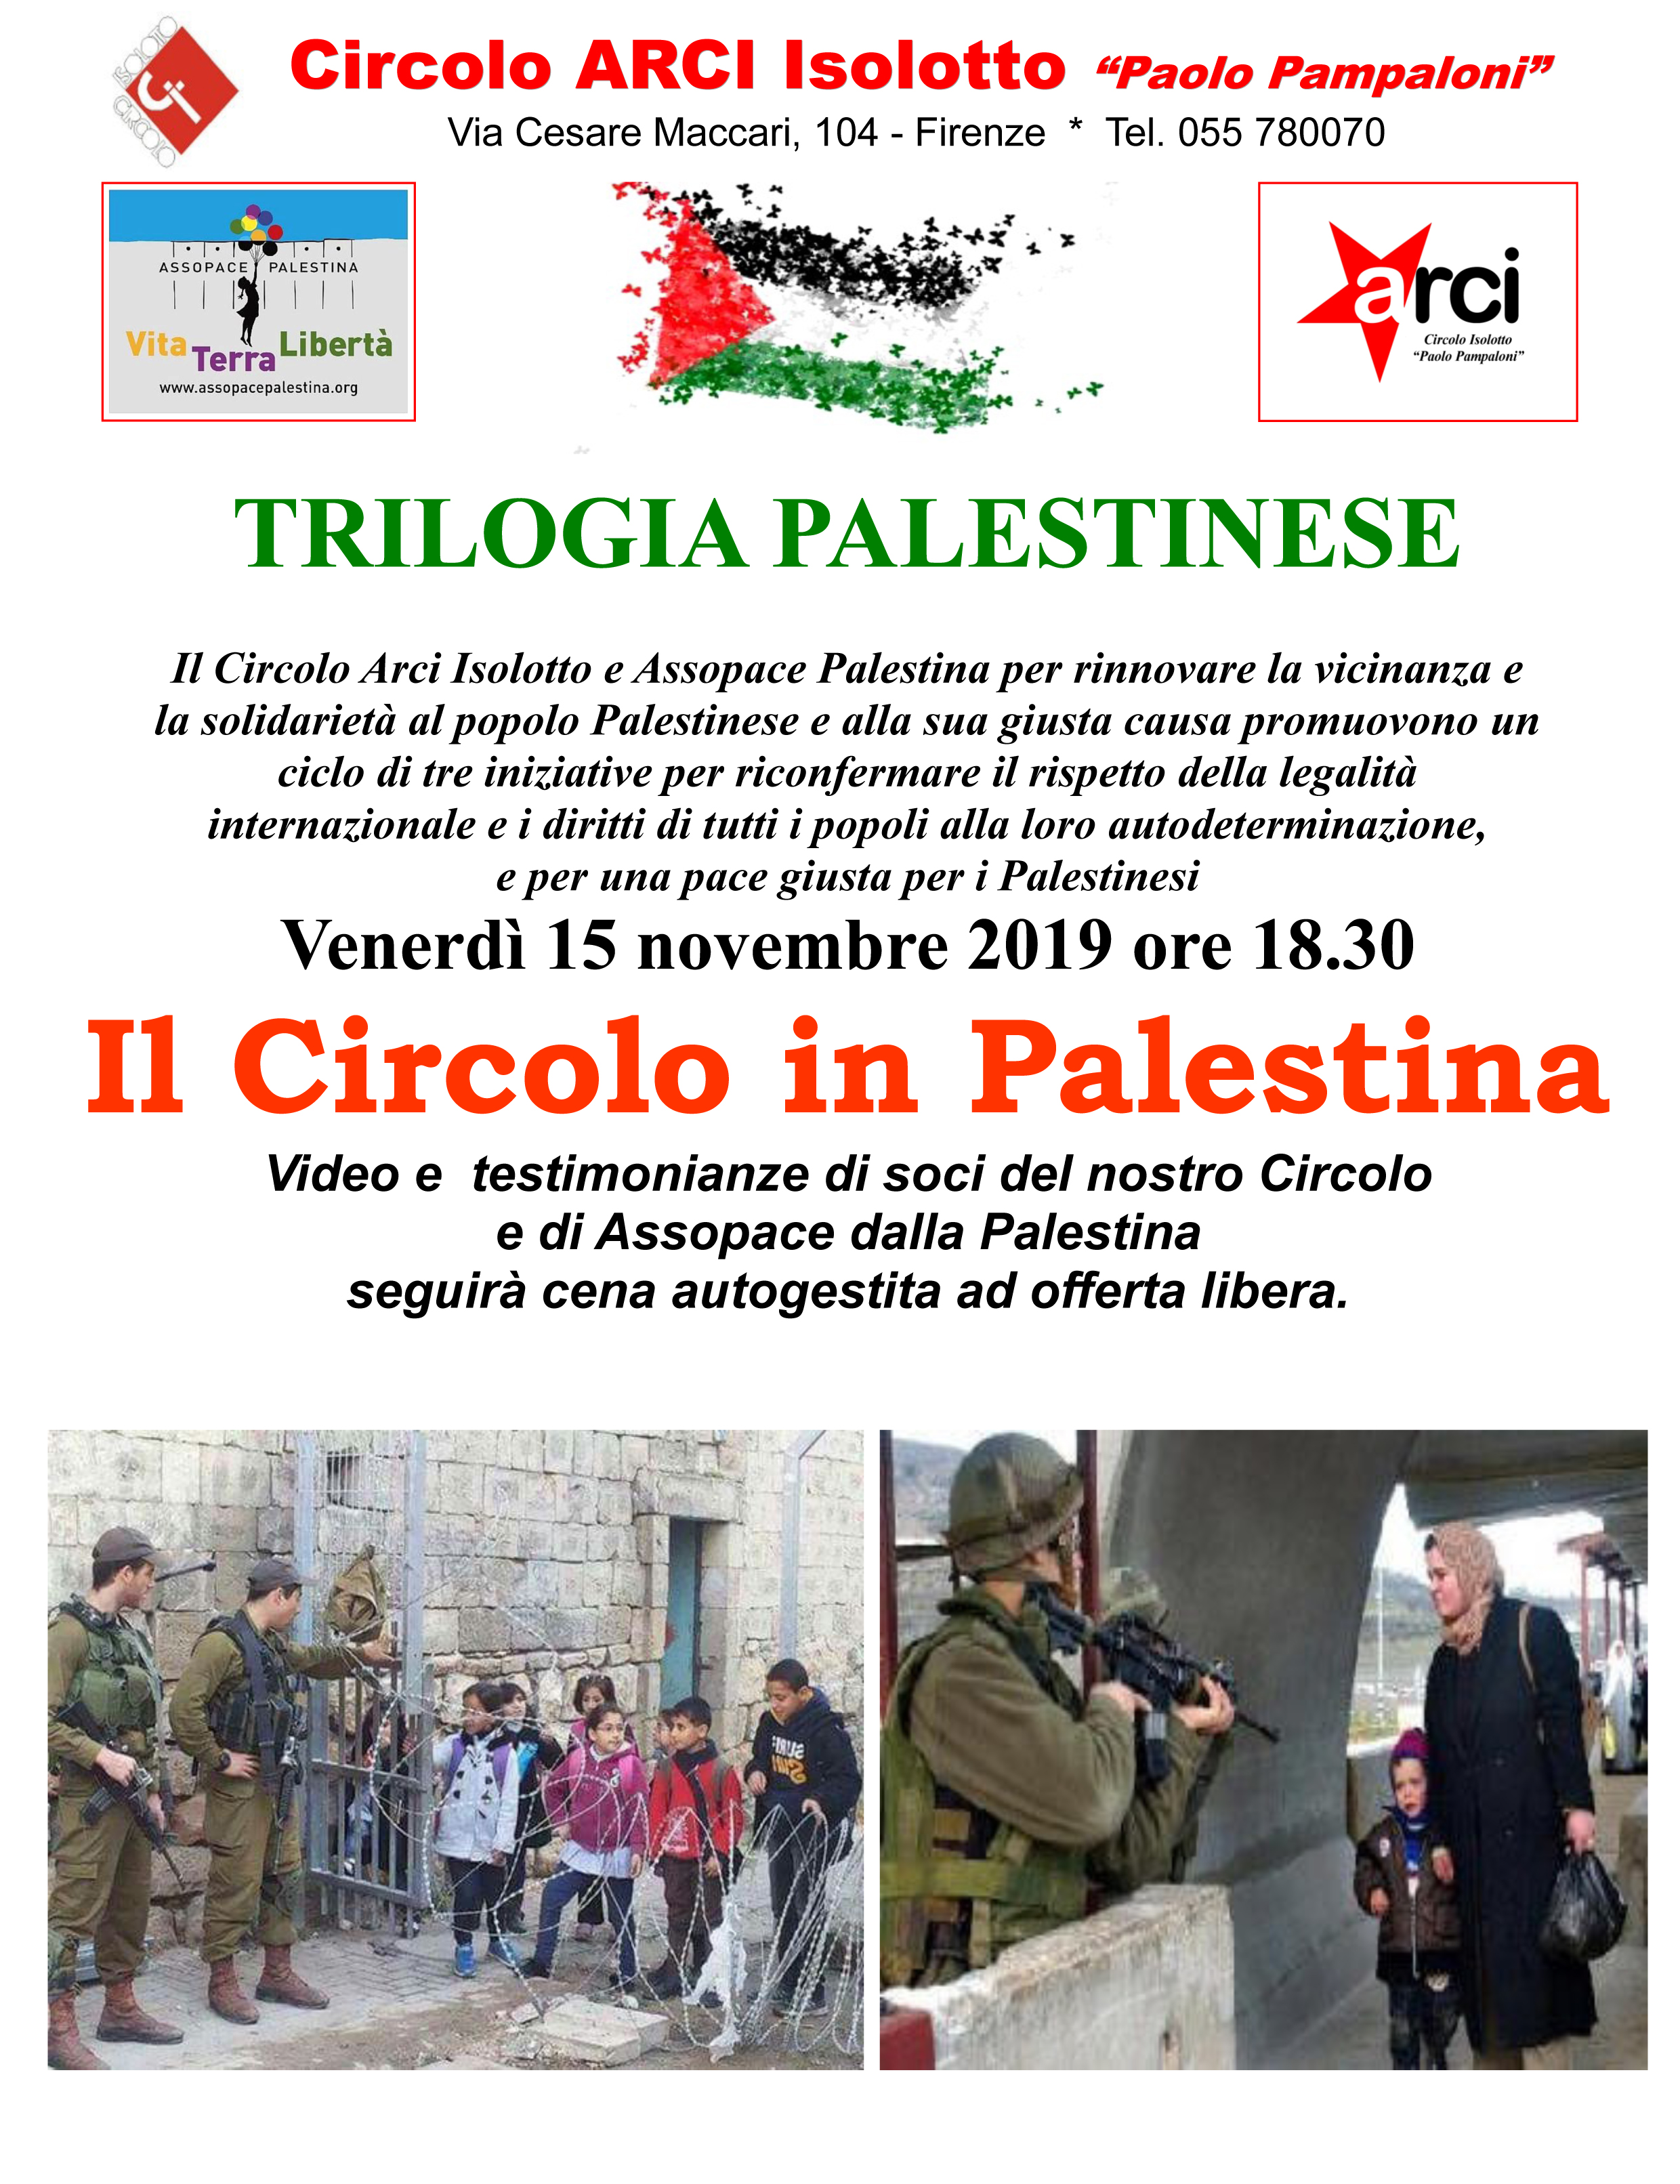 Firenze, 15 novembre: Video e testimonianze dalla Palestina